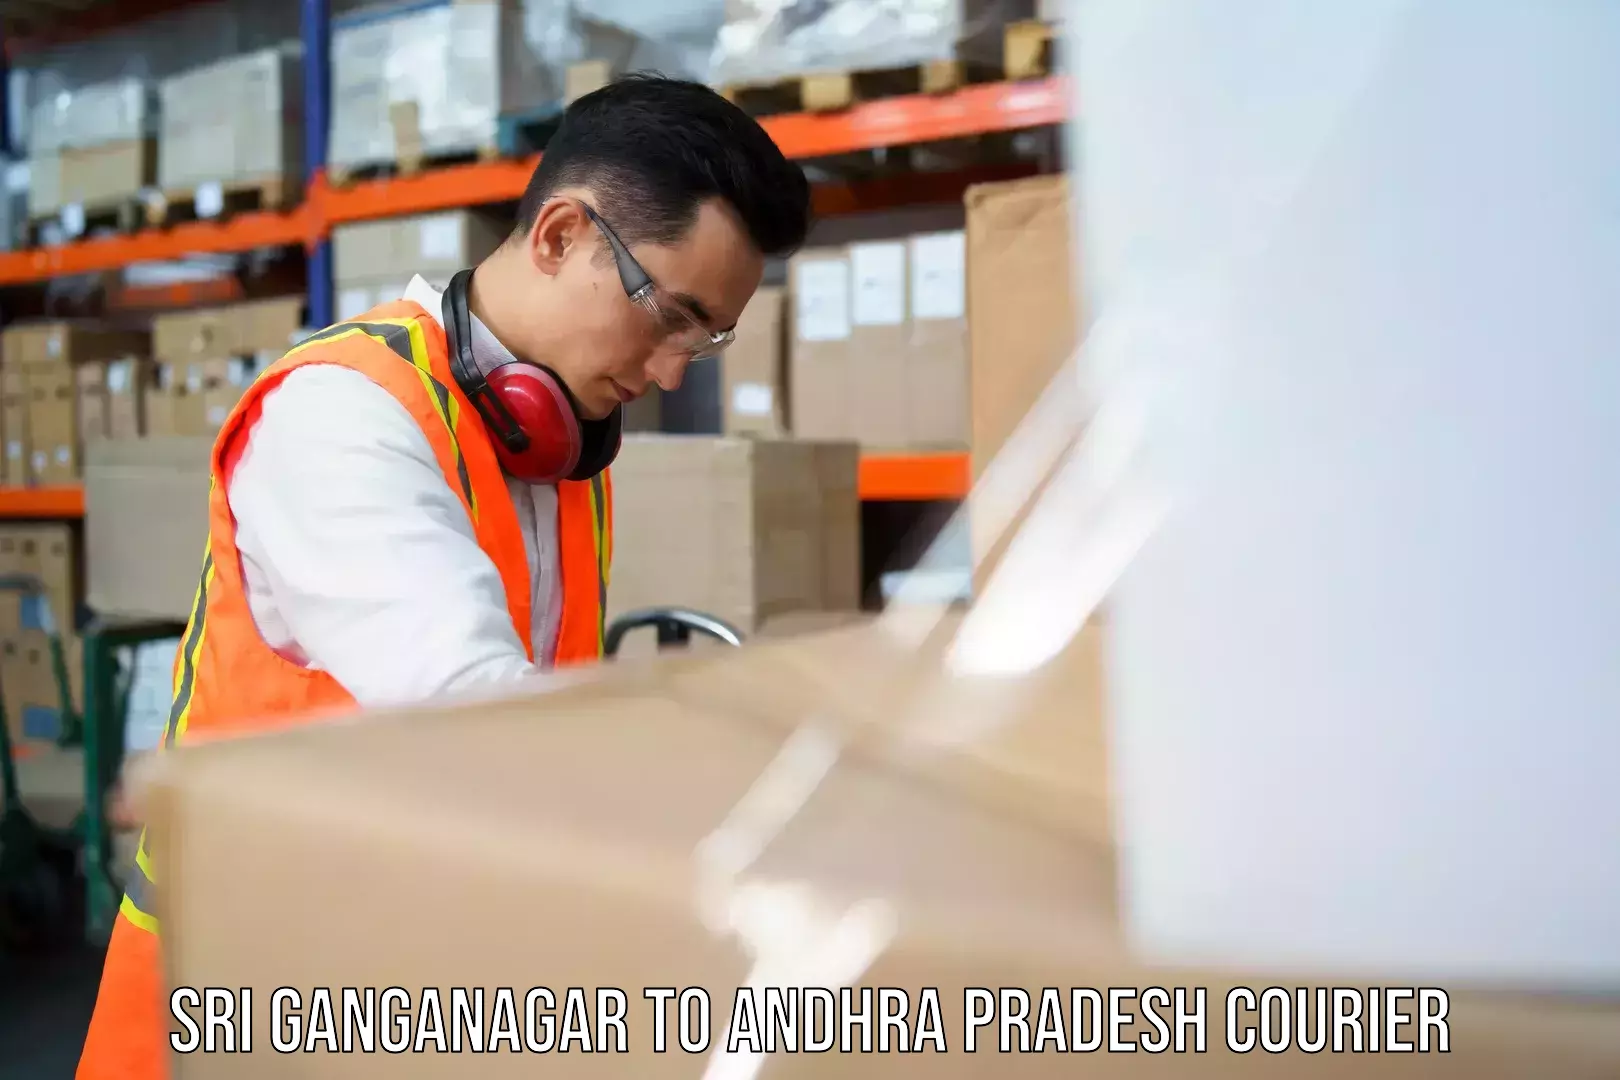 International parcel service Sri Ganganagar to Draksharamam